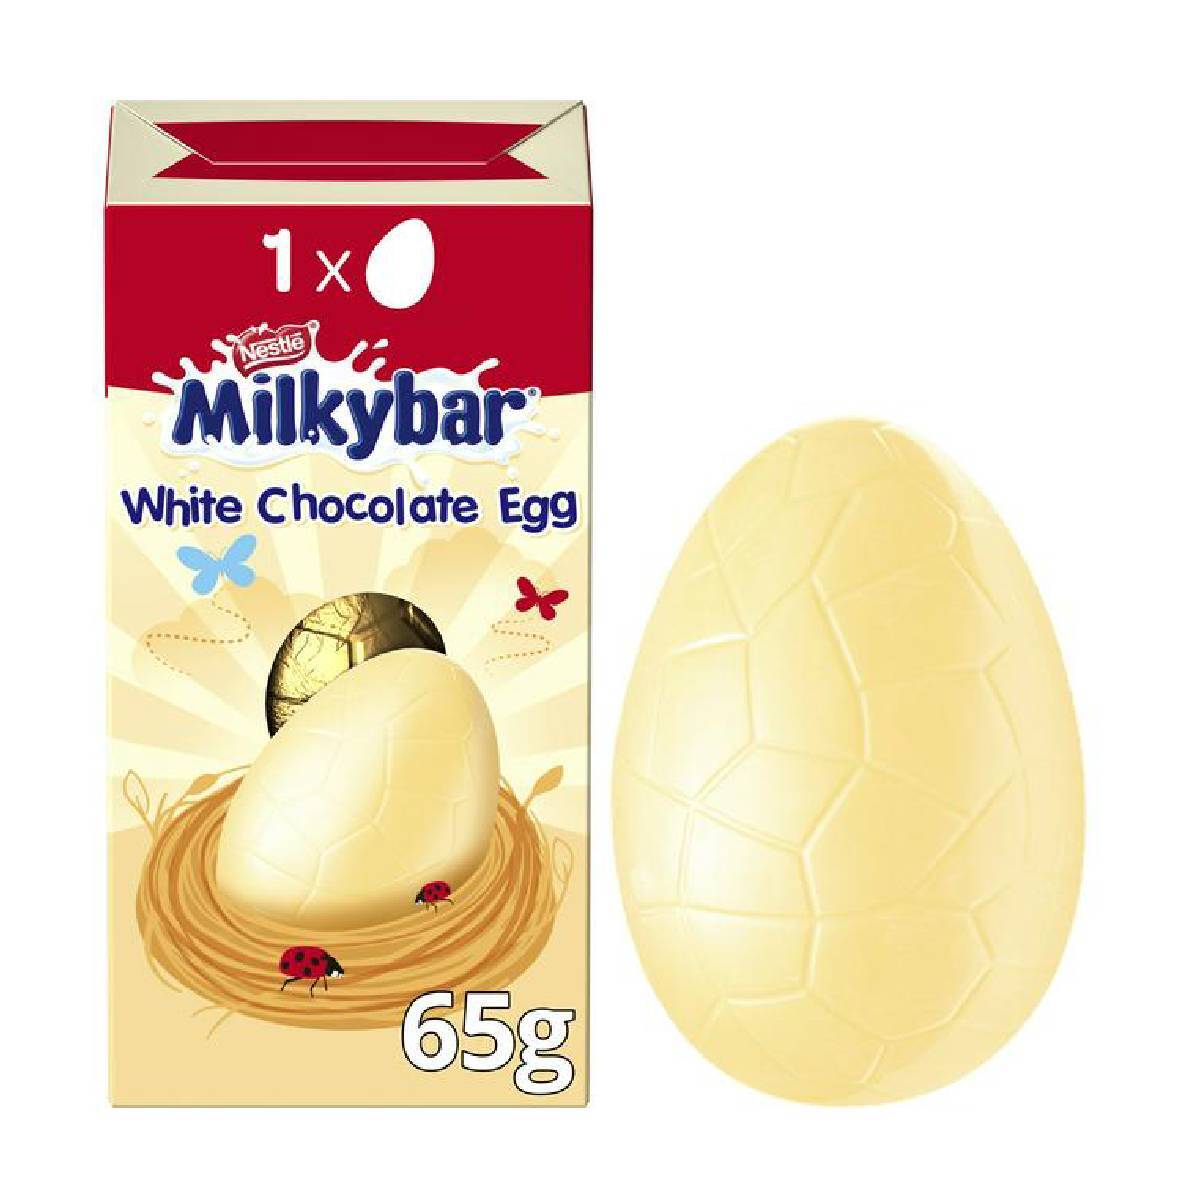 Buy Nestle Milkybar White Chocolate Egg 65 g Online at Best Price | Covrd Choco.Bars&Tab | Lulu UAE in UAE